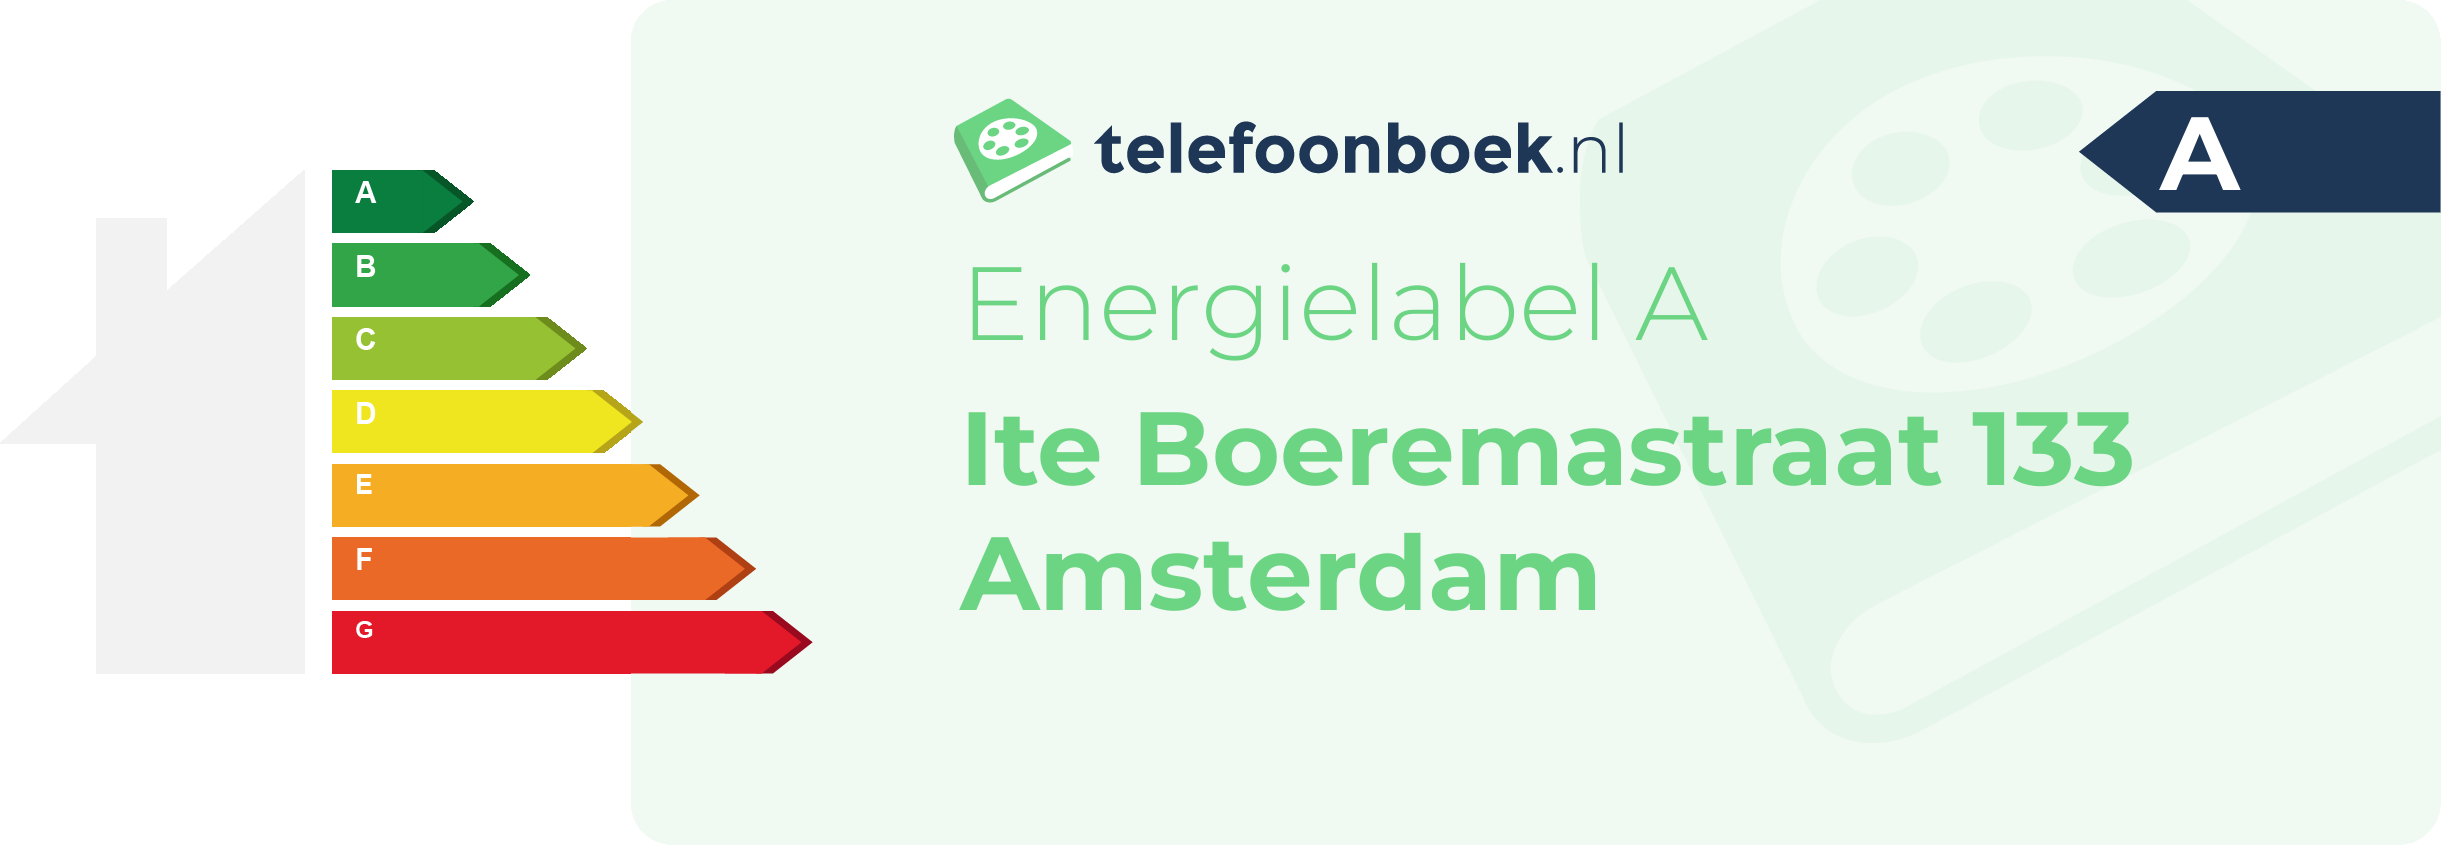 Energielabel Ite Boeremastraat 133 Amsterdam